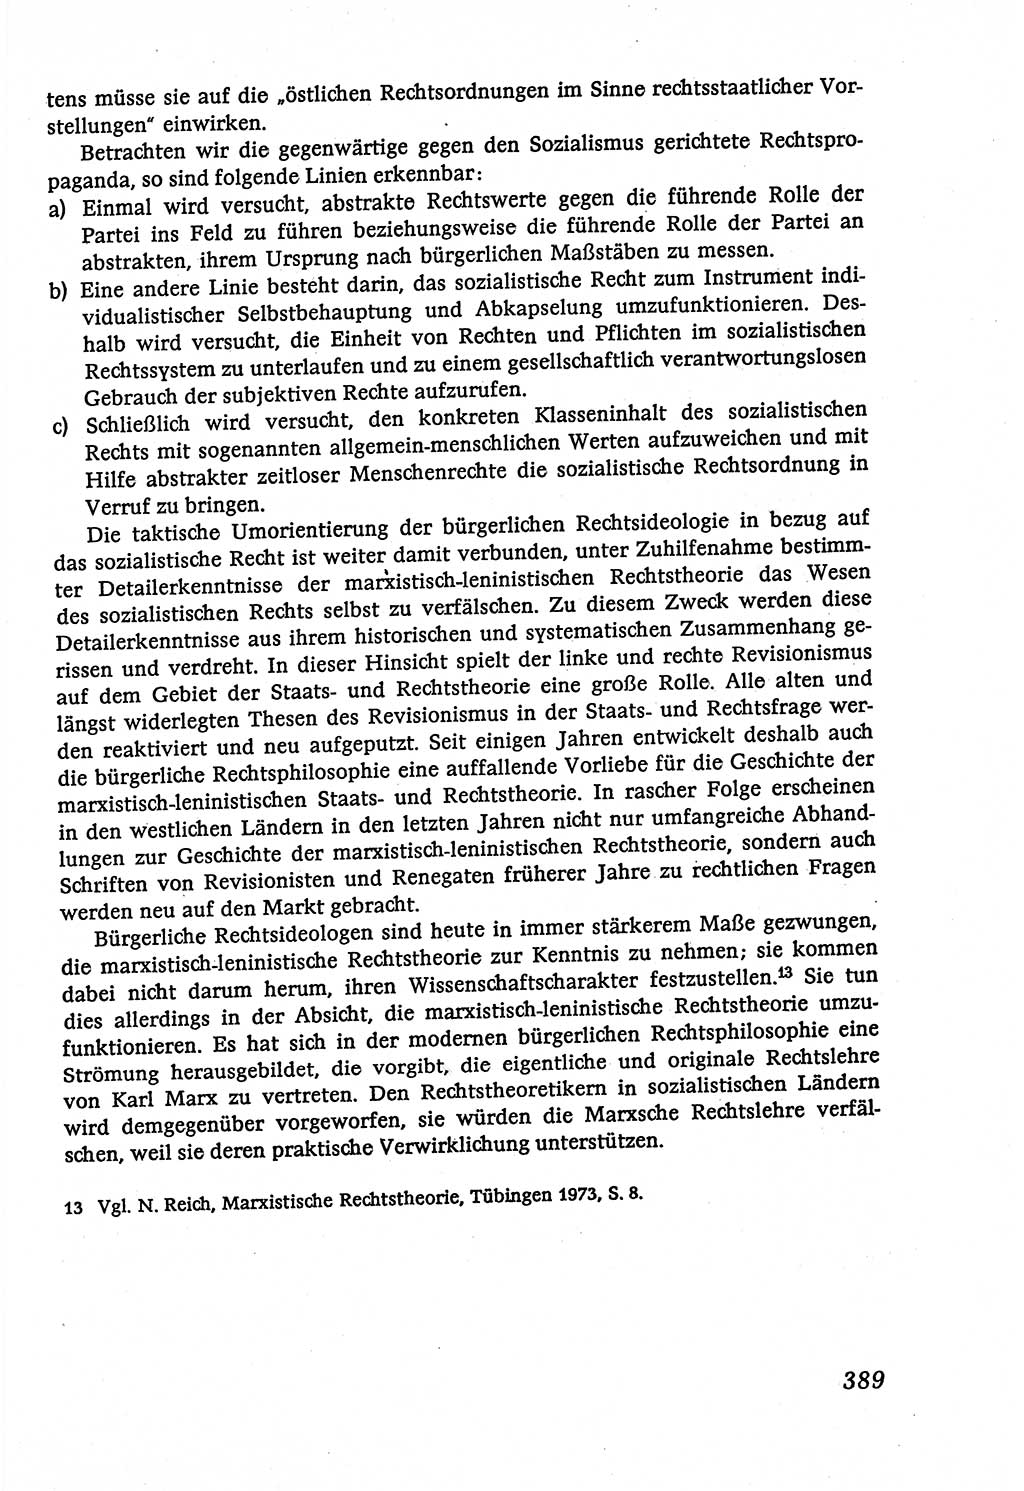 Marxistisch-leninistische (ML) Staats- und Rechtstheorie [Deutsche Demokratische Republik (DDR)], Lehrbuch 1980, Seite 389 (ML St.-R.-Th. DDR Lb. 1980, S. 389)